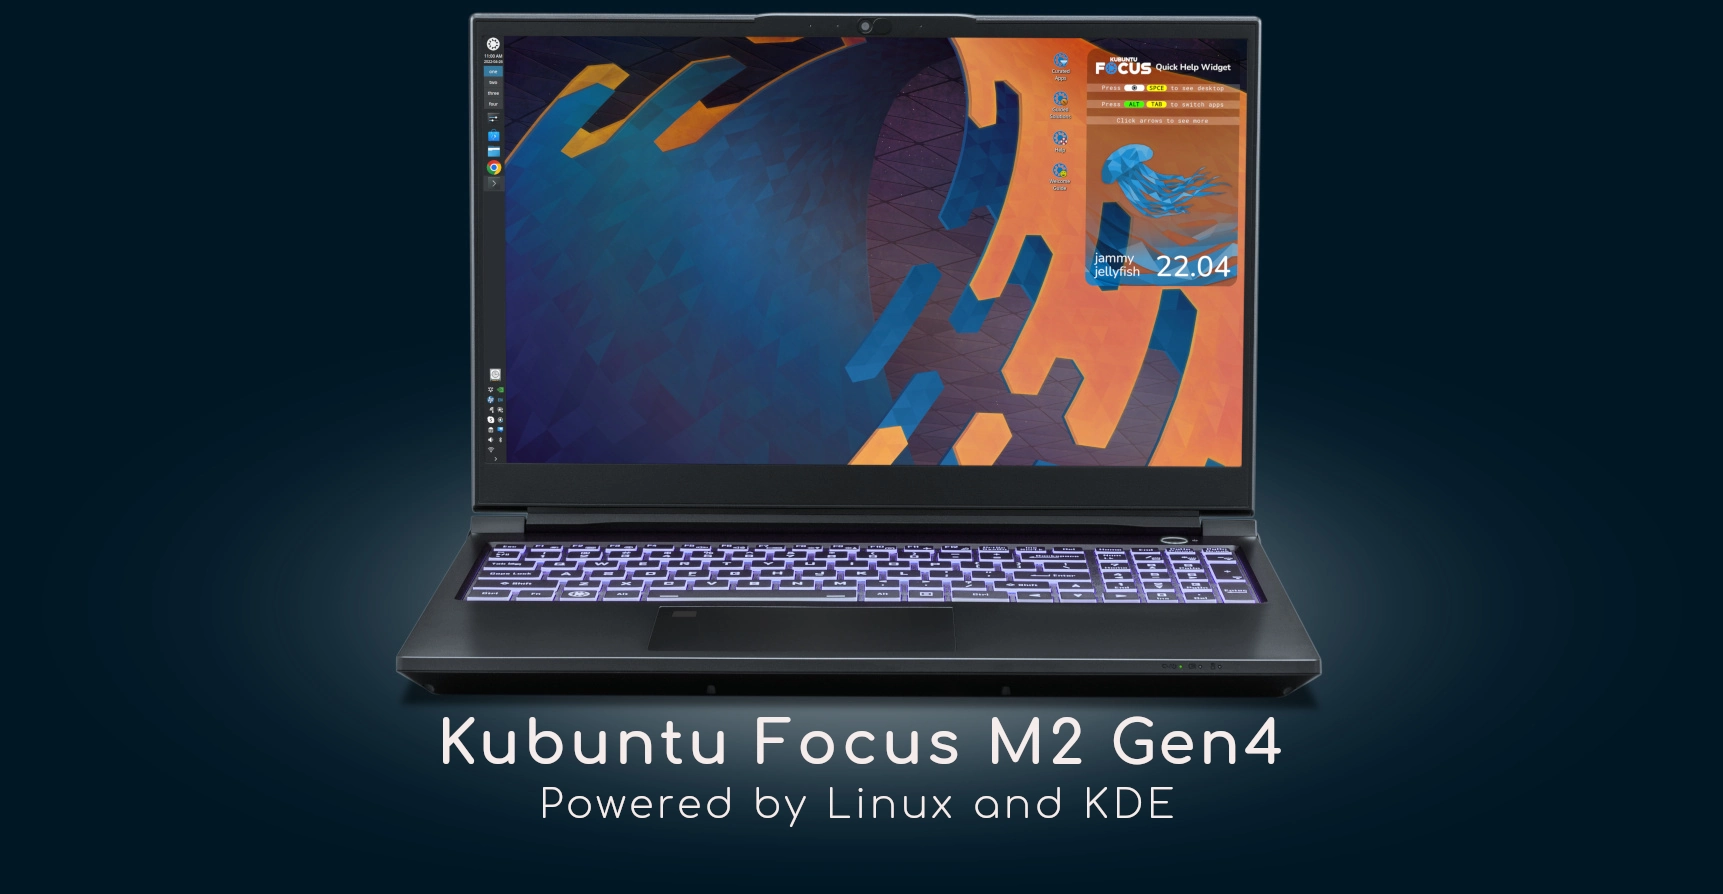 Kubuntu Focus M2 Gen4 Linux Laptop Starts Shipping, Boasts Alder Lake CPU, QHD Display